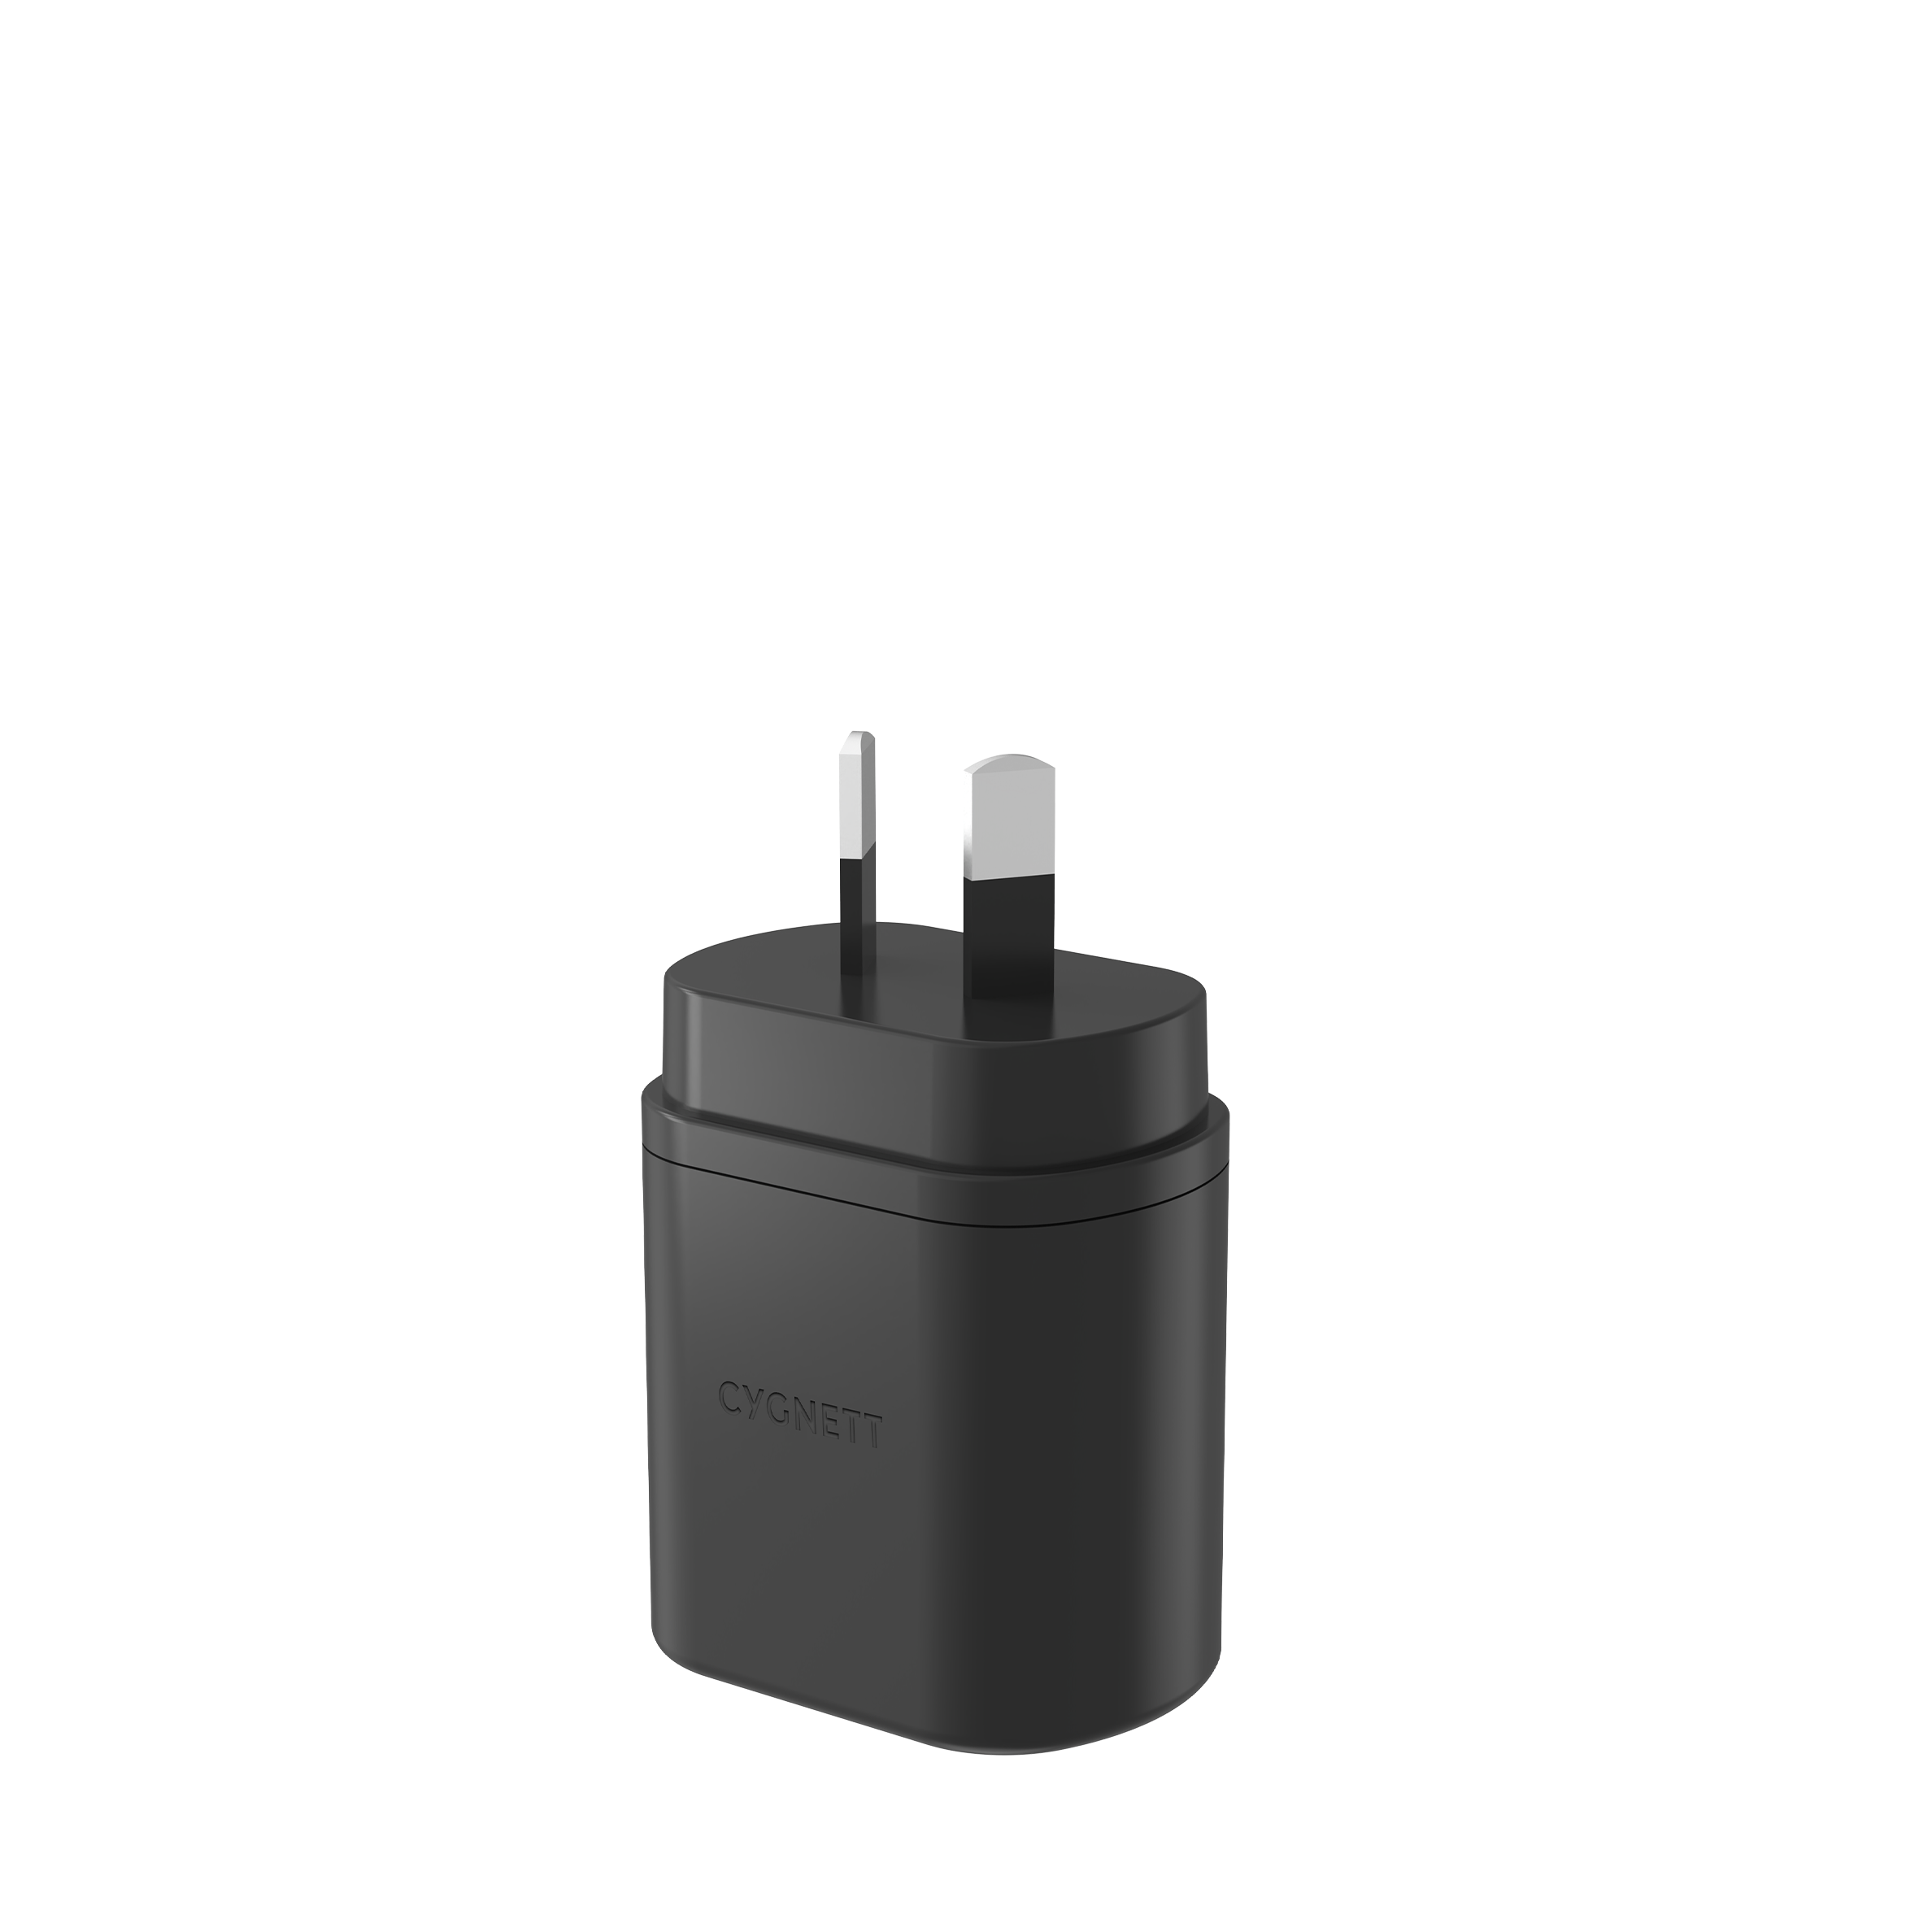 25W USB-C Wall Charger - Cygnett (AU)